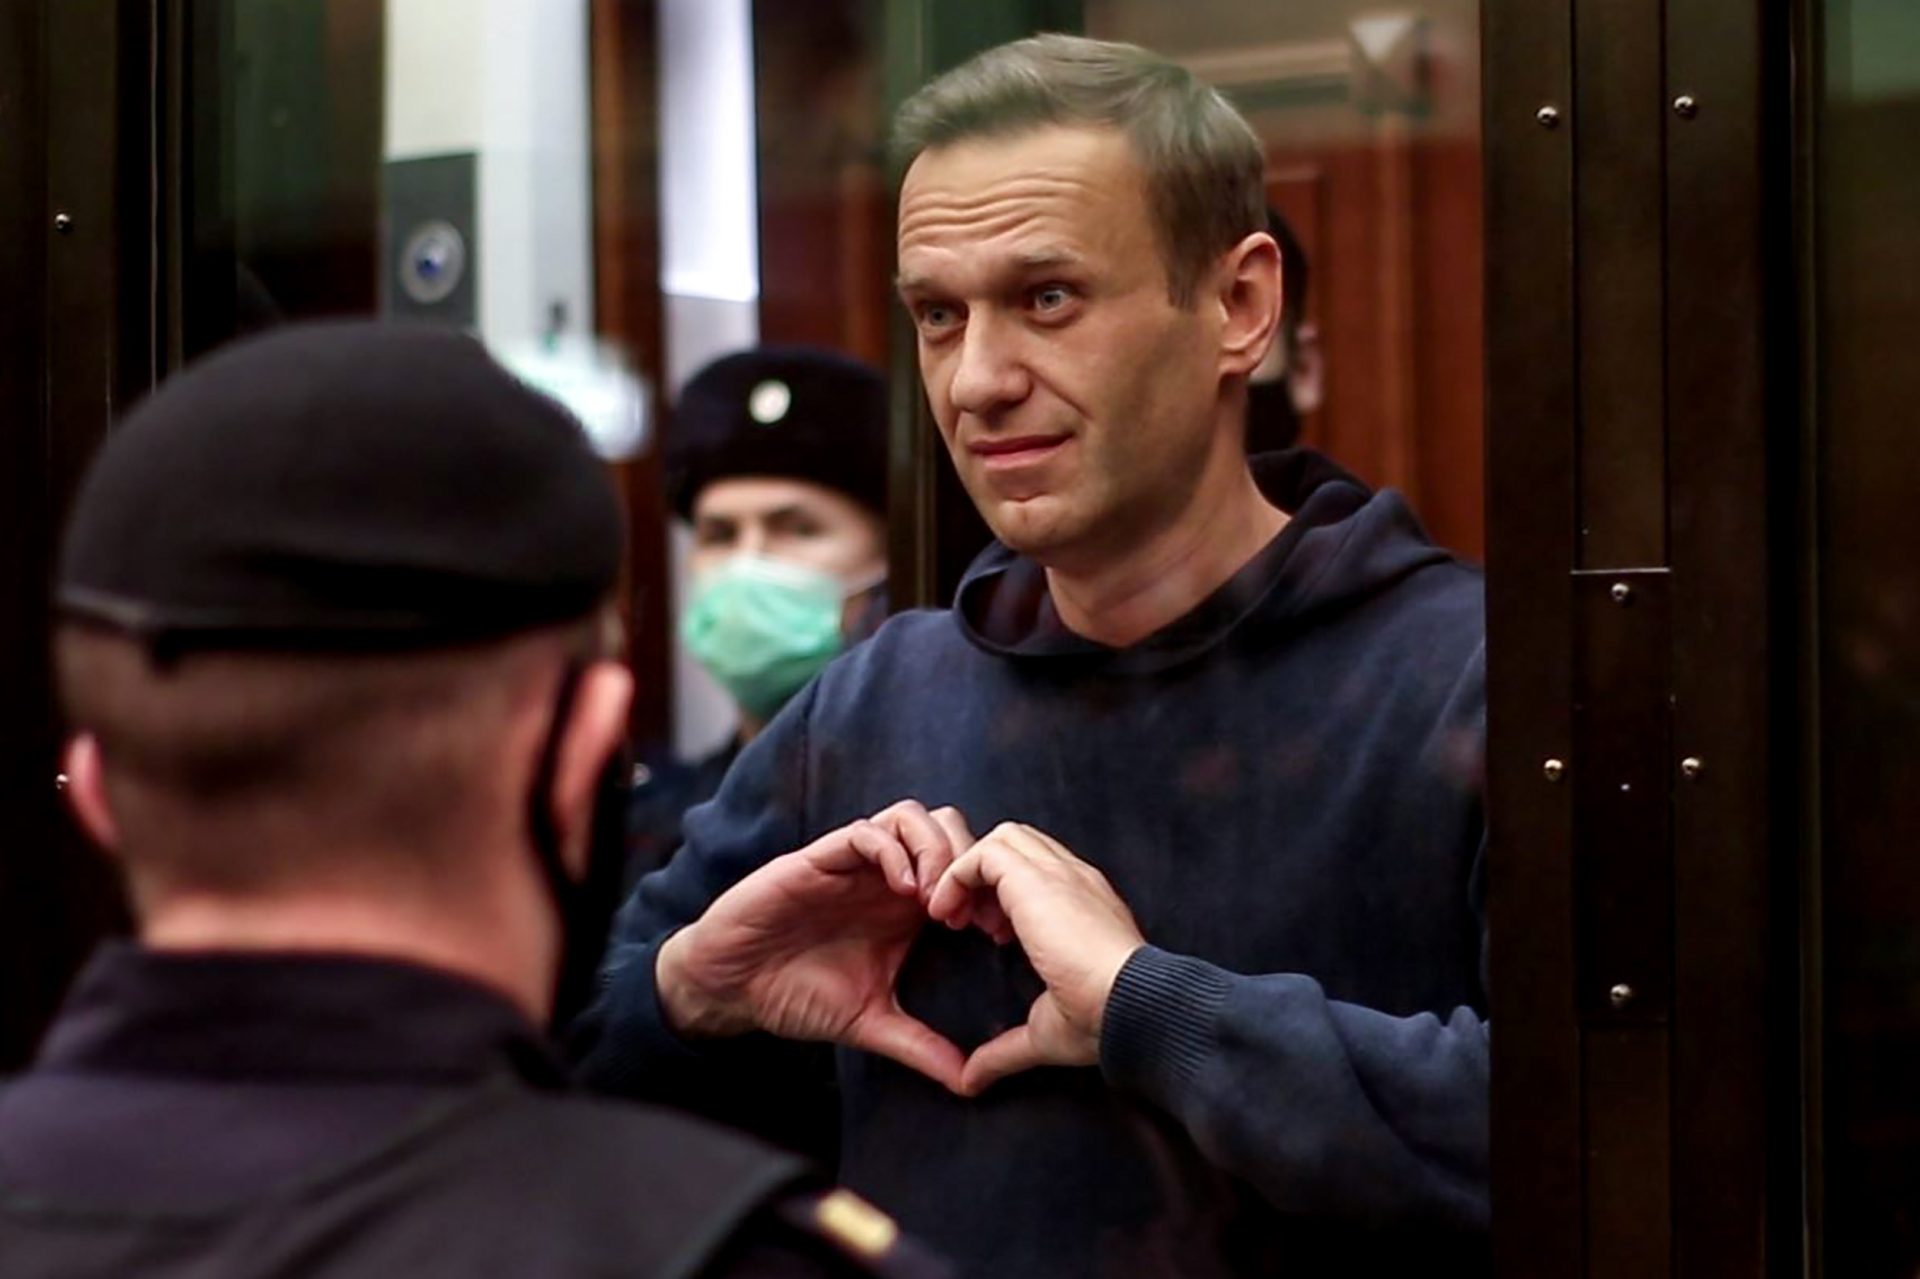 Autoridades russas confirmam transferência de Navalny, mas não revelam a sua localização atual